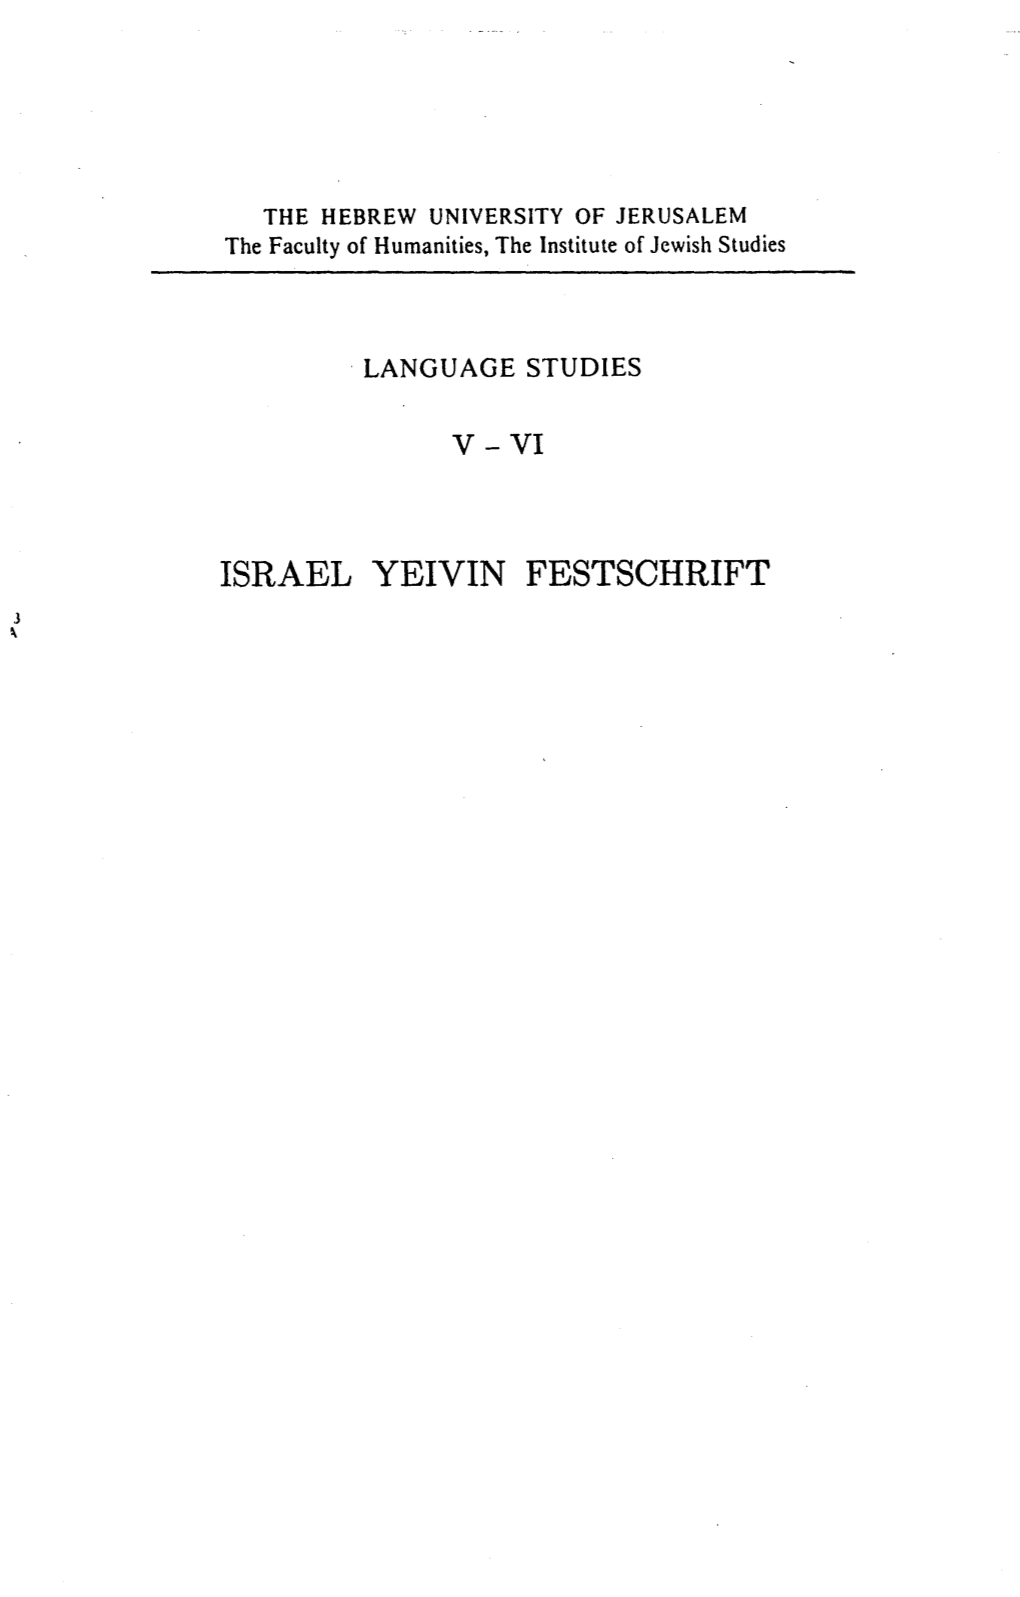 Israel Yeivin Festschrift Language Studies